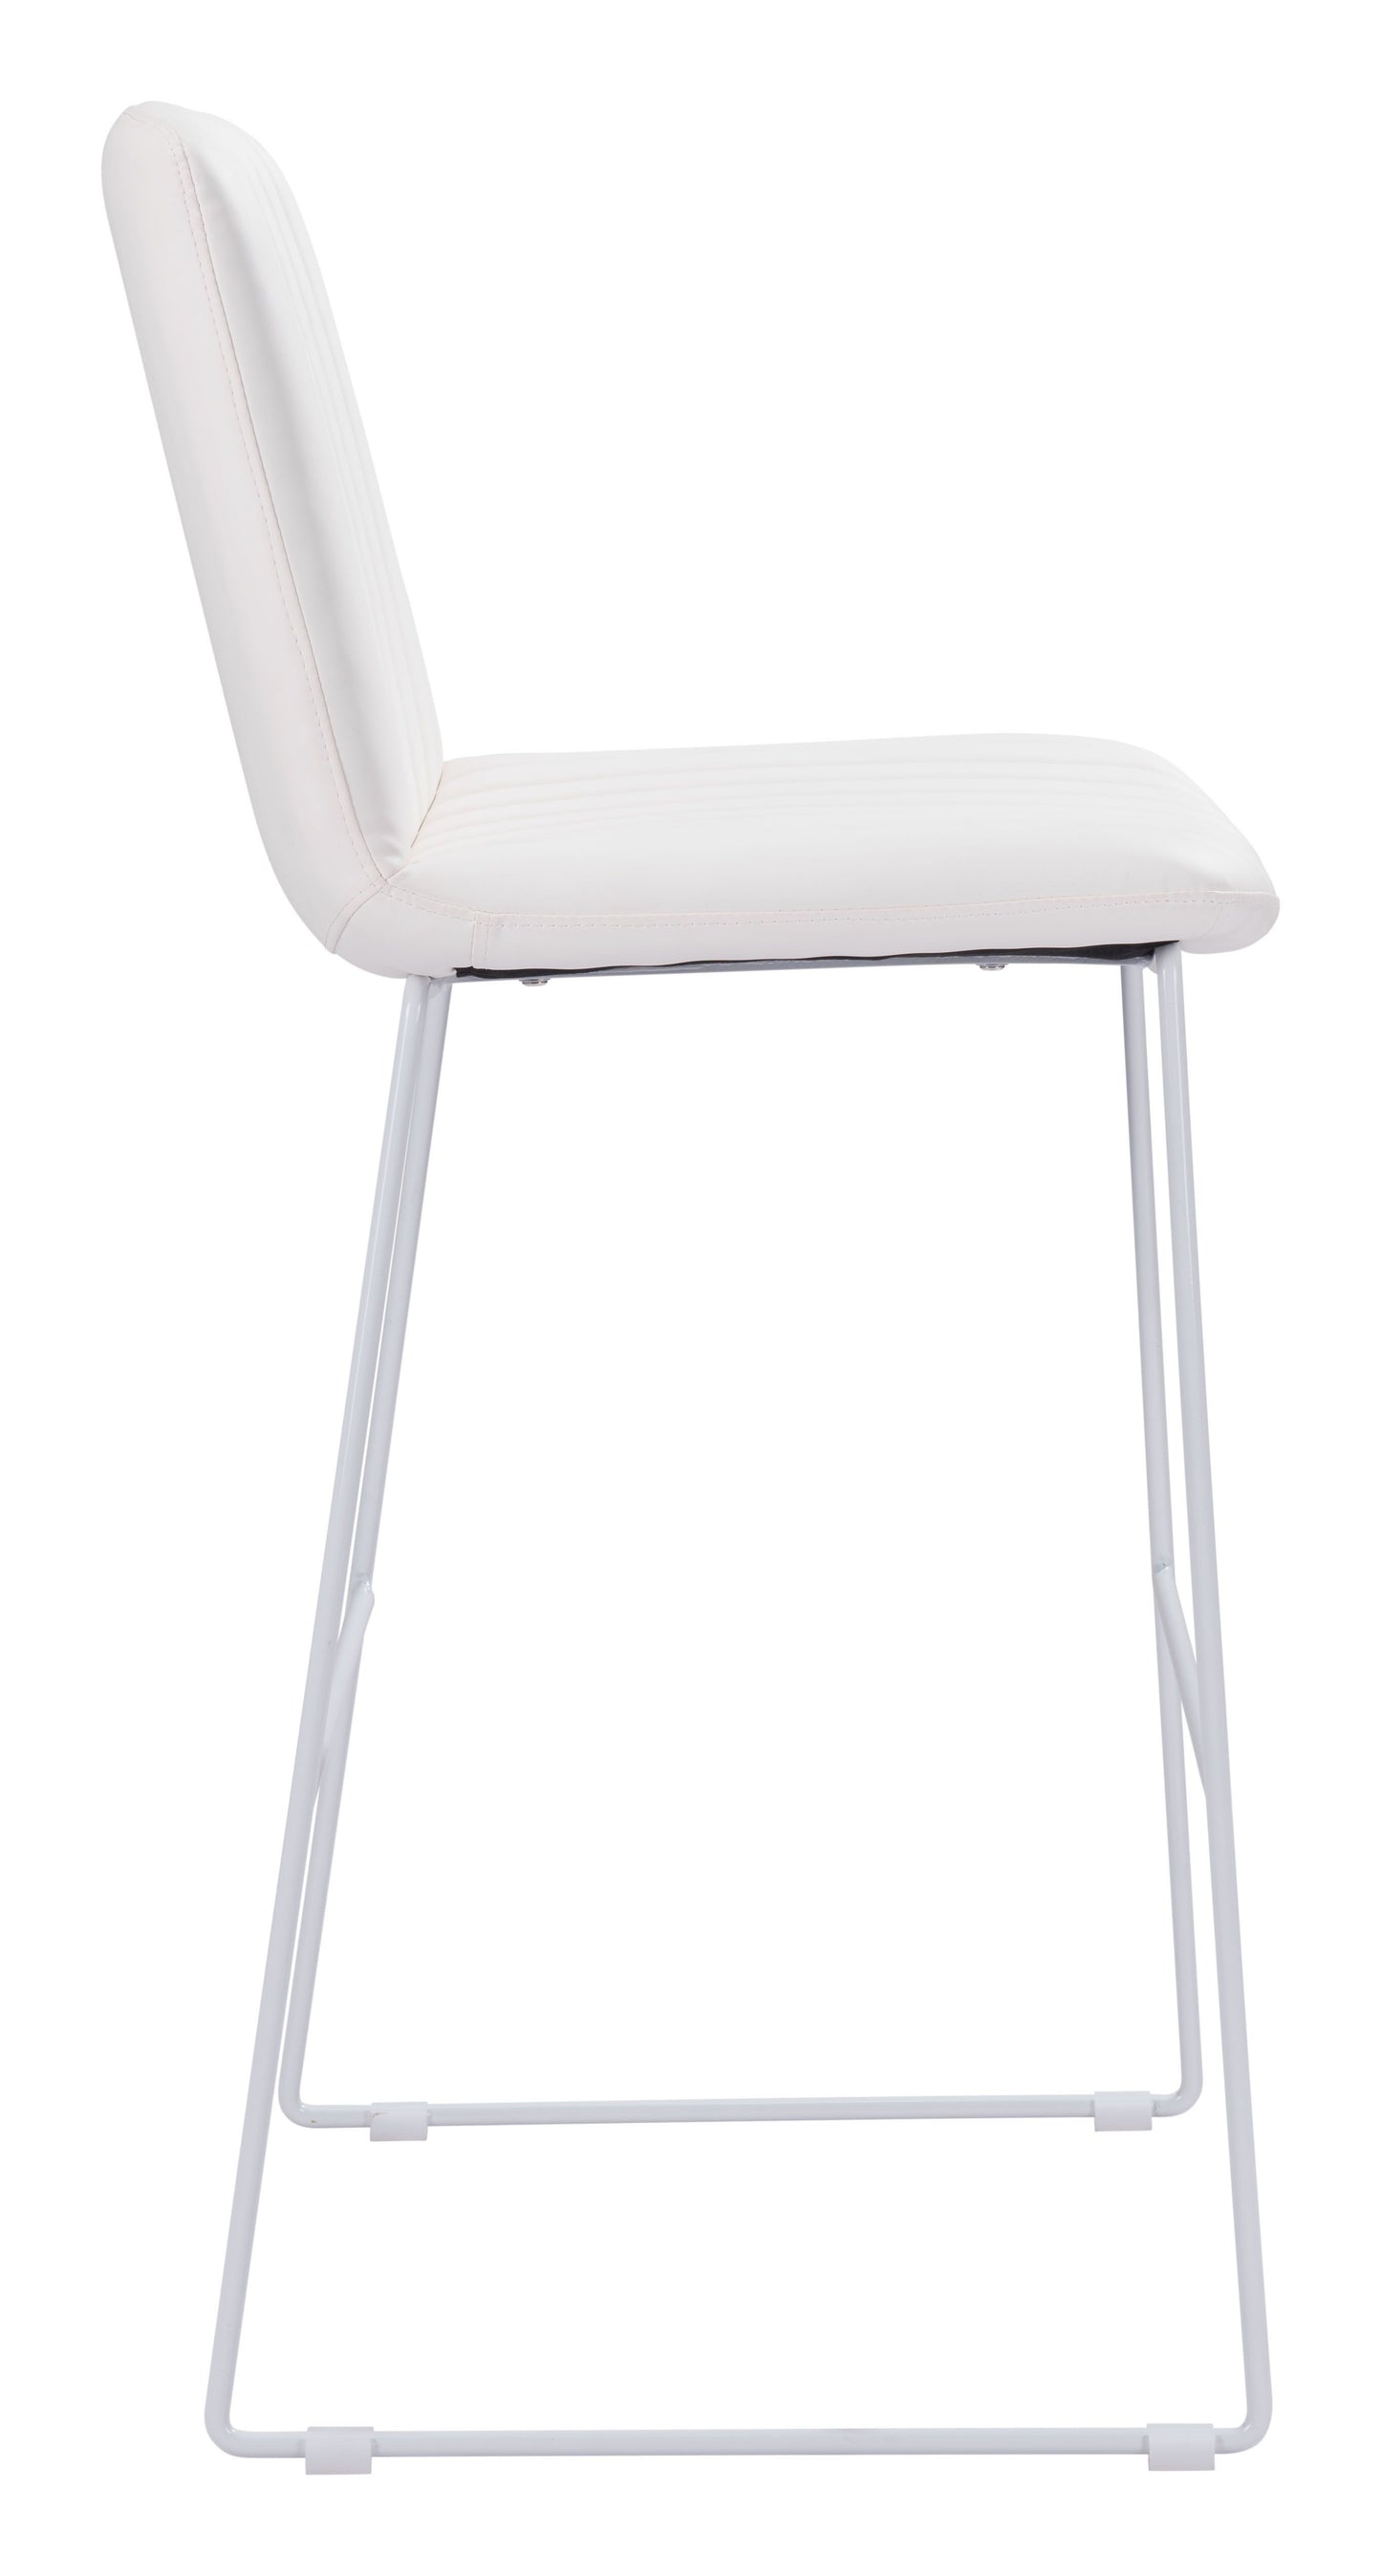 Mode Bar Chair White